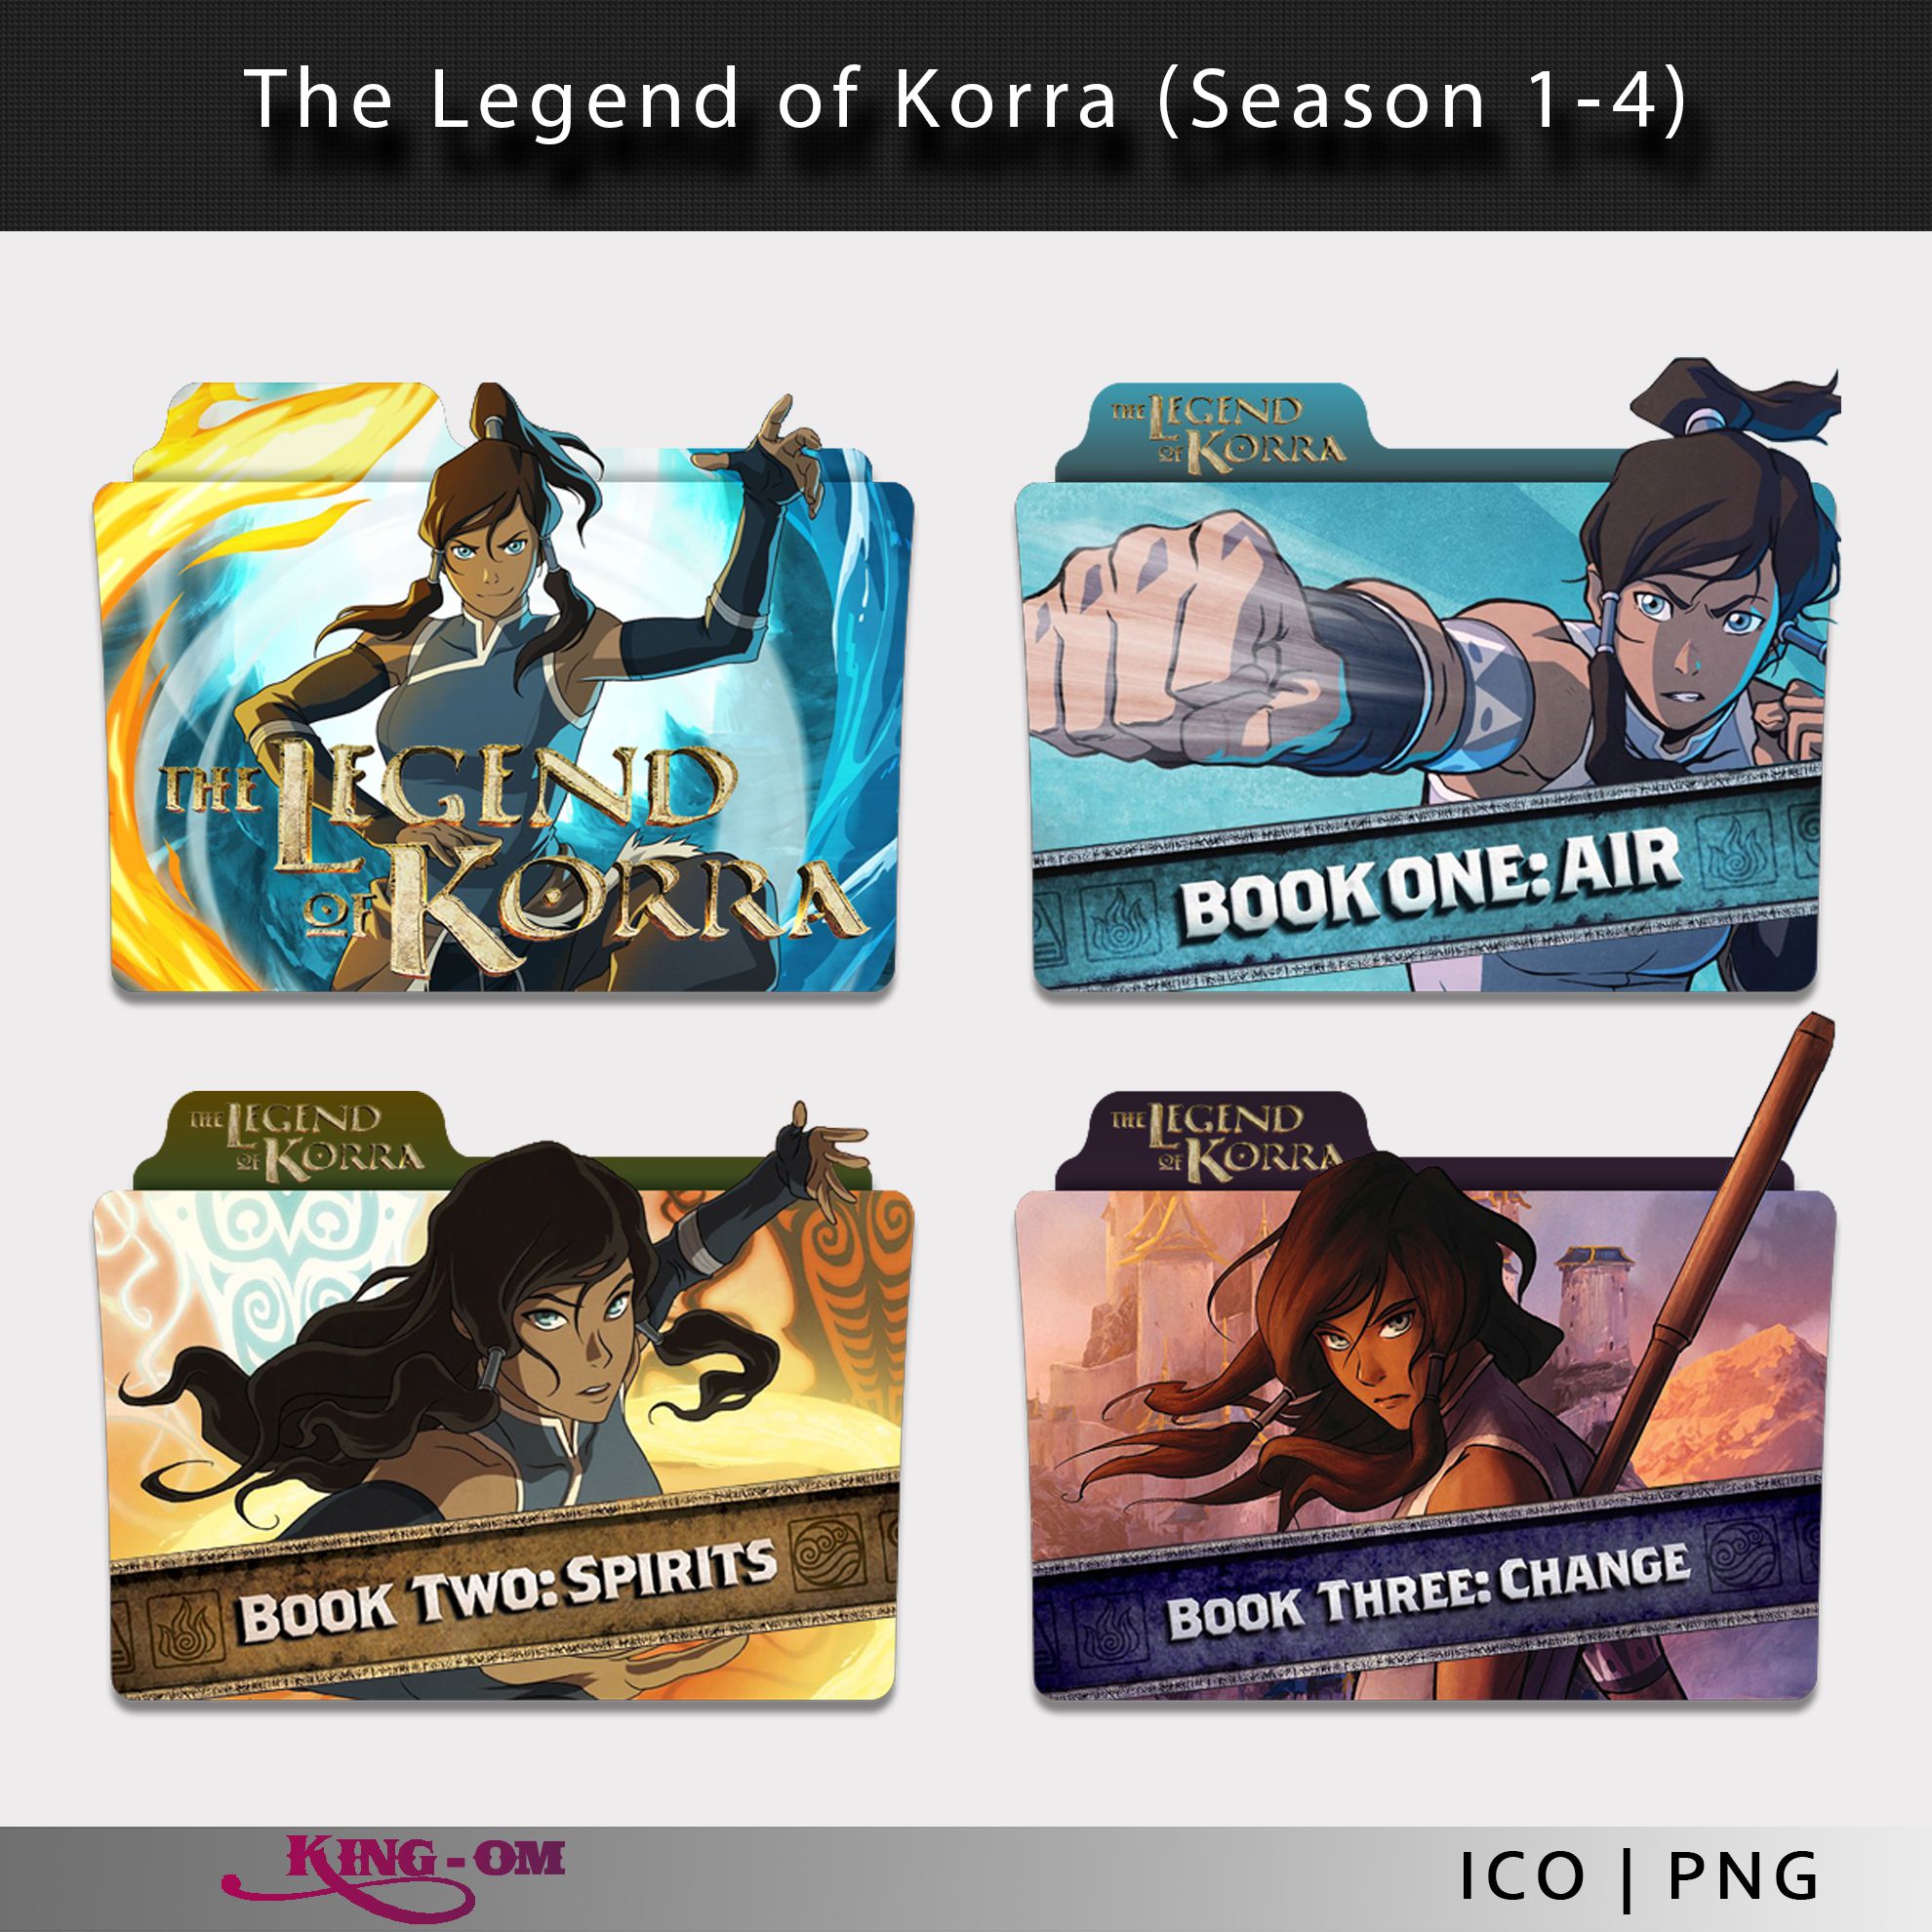 Phiên bản mới nhất của Legend of Korra folder icon sẽ làm cuộc sống của bạn trở nên tinh tế hơn bao giờ hết. Với những thiết kế táo bạo và phong cách thú vị, đây sẽ là sự lựa chọn hoàn hảo cho người yêu thích phim hoạt hình và phiêu lưu.